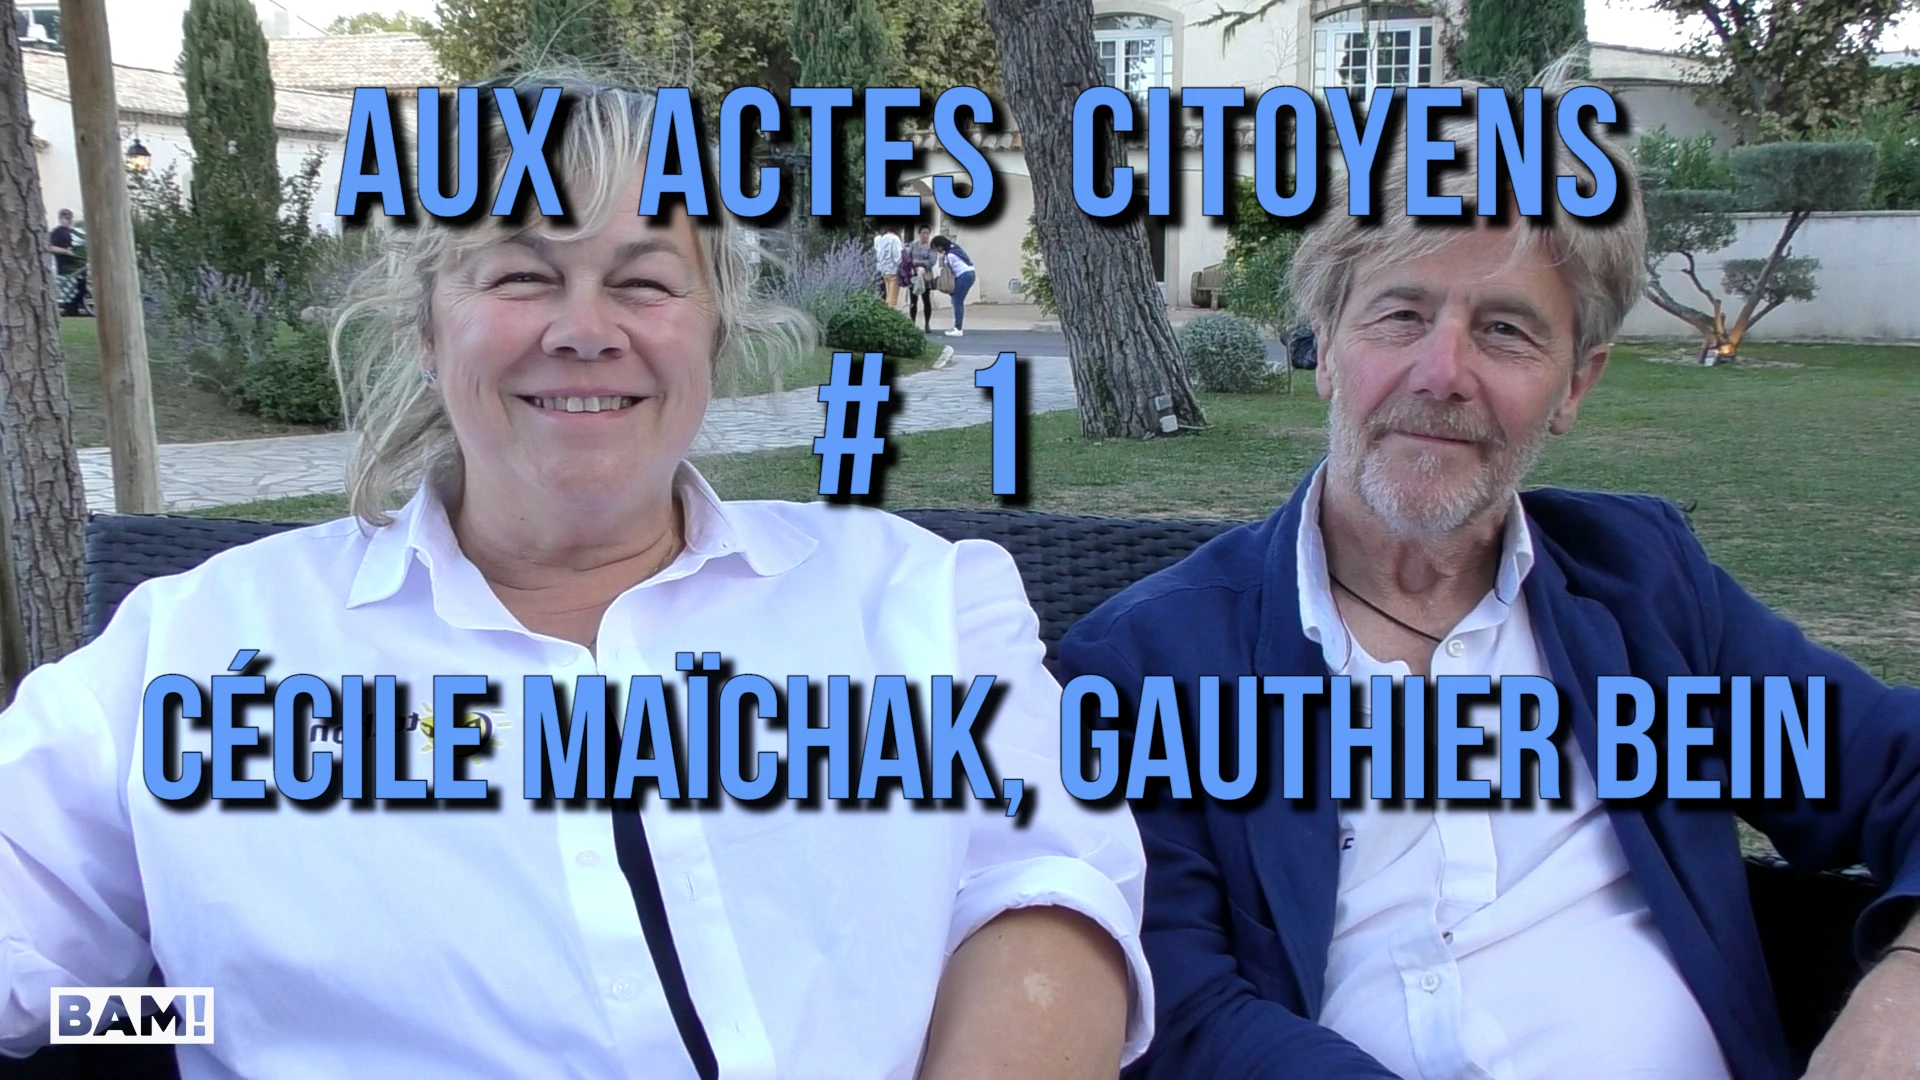 AUX ACTES CITOYENS # 1 CÉCILE MAÏCHAK & GAUTHIER BEIN